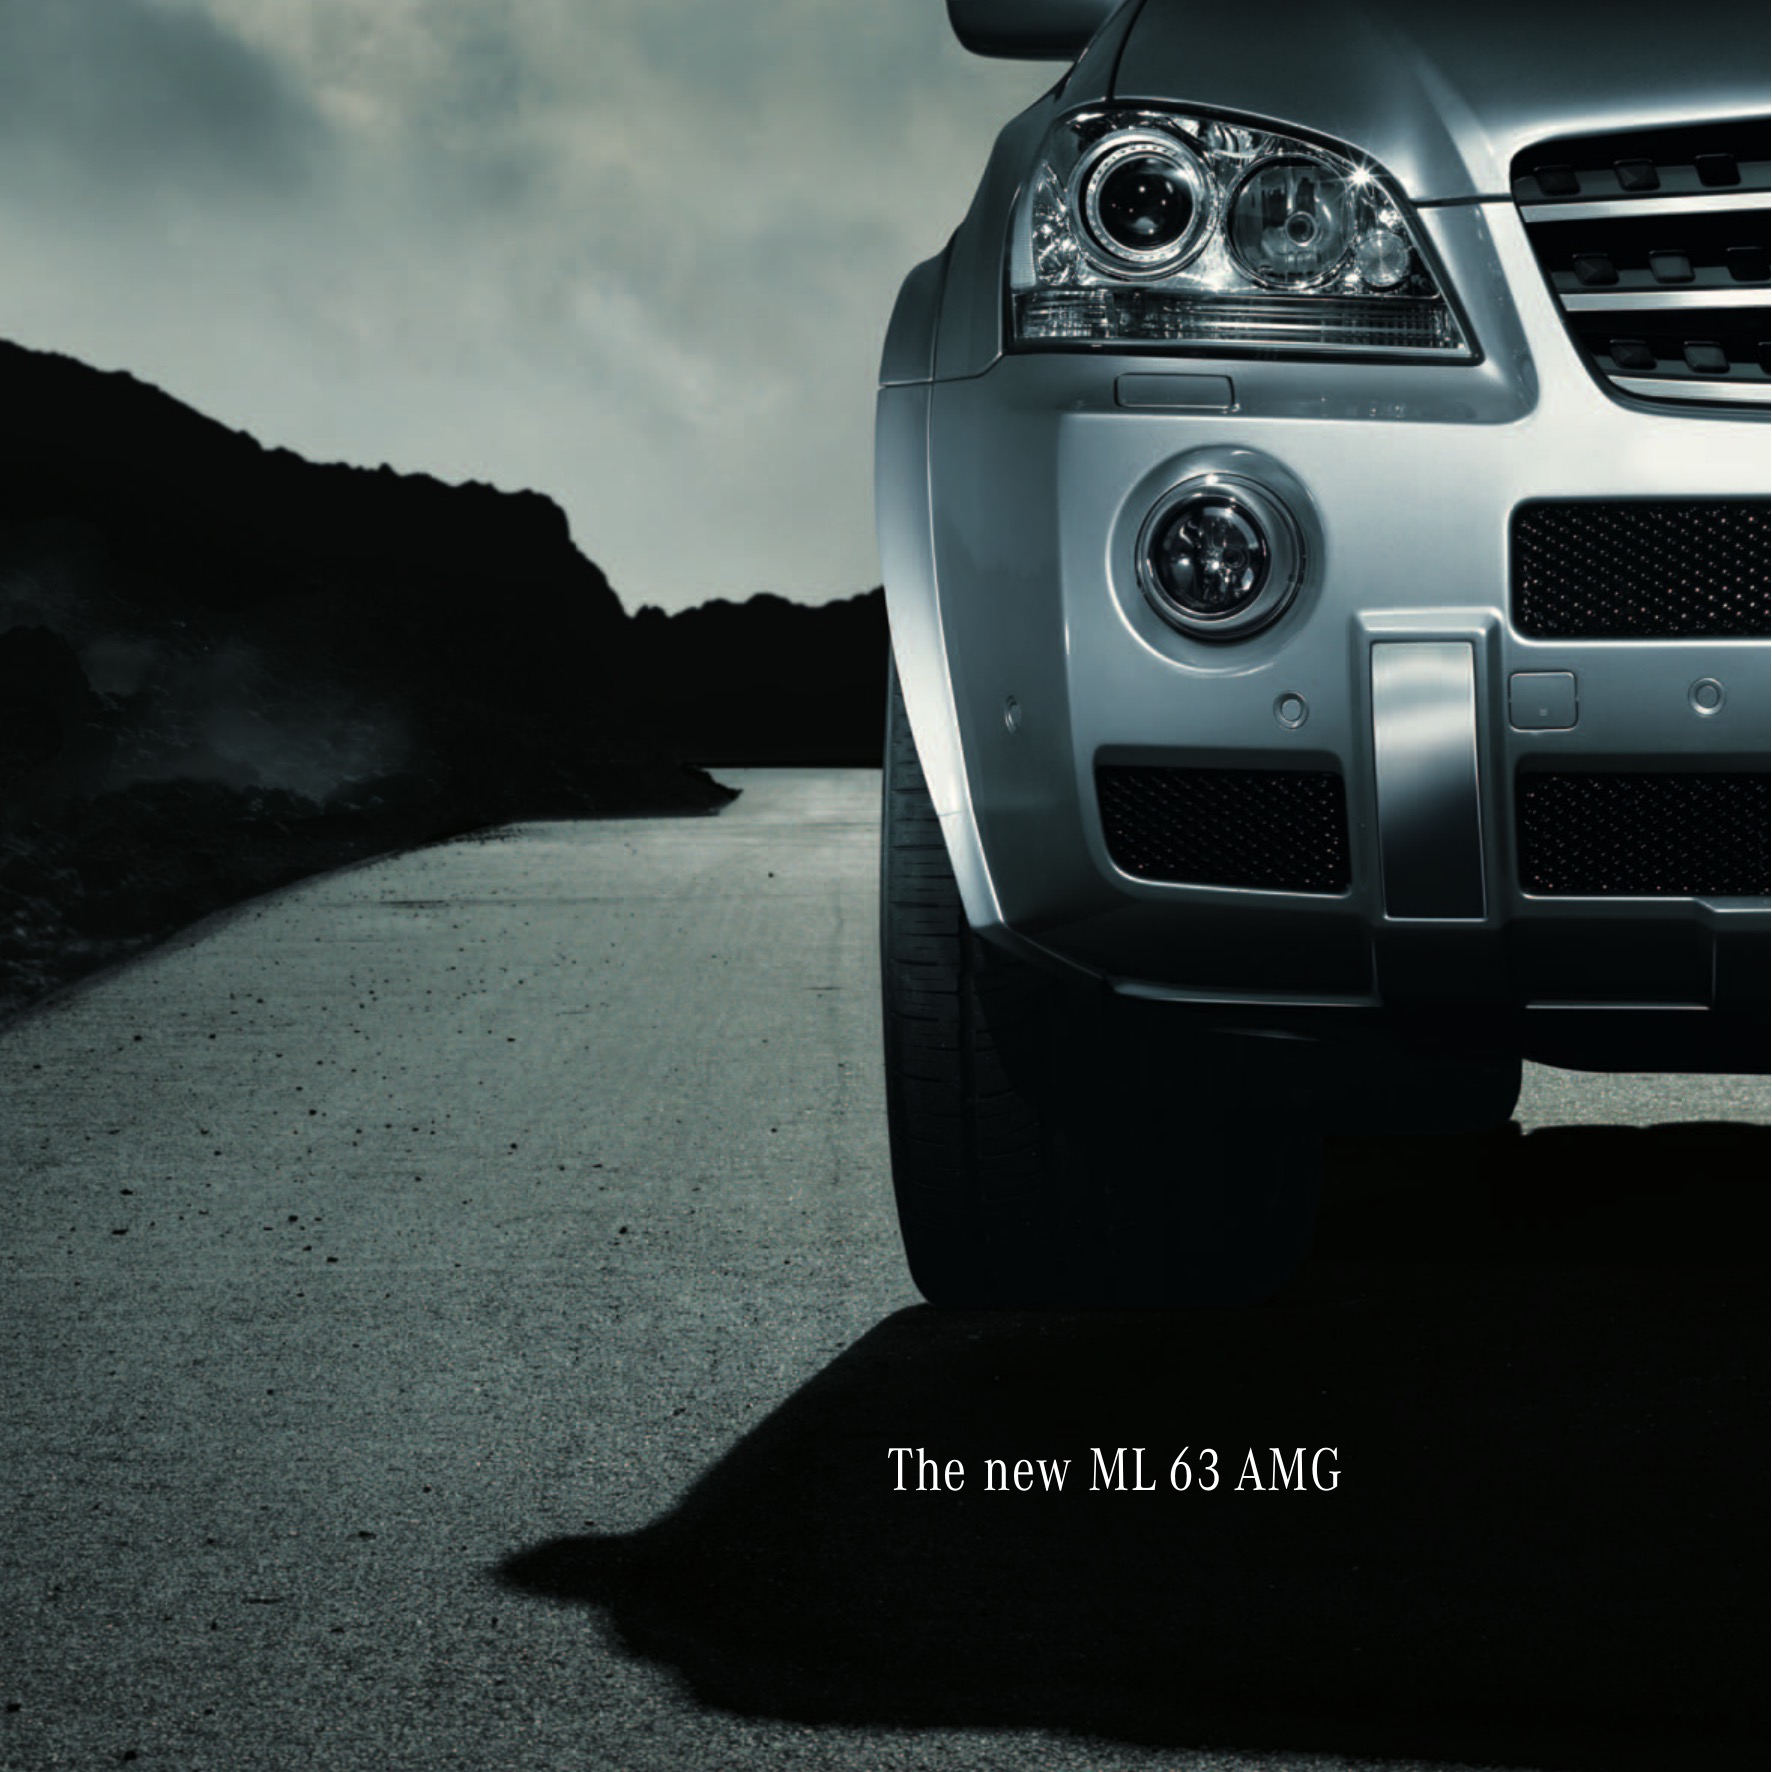 2006 Mercedes-Benz ML-Class AMG Brochure